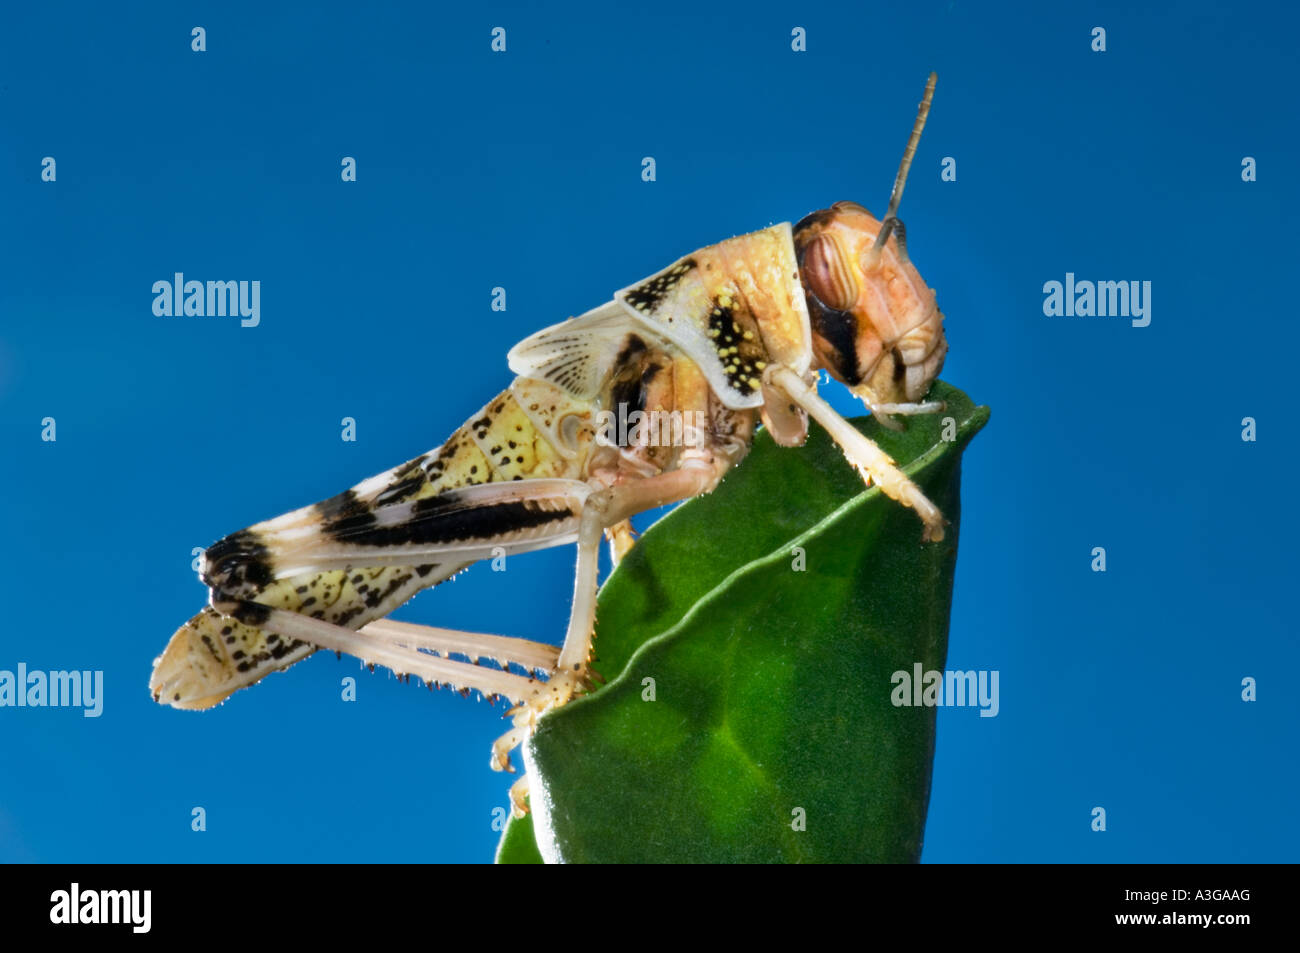 afrikanische Wüste Heuschrecke Schistocerca Gregaria Halbwüchsige GRASSHOPPER Essen feed grünes Blatt blau Hintergrund Stockfoto